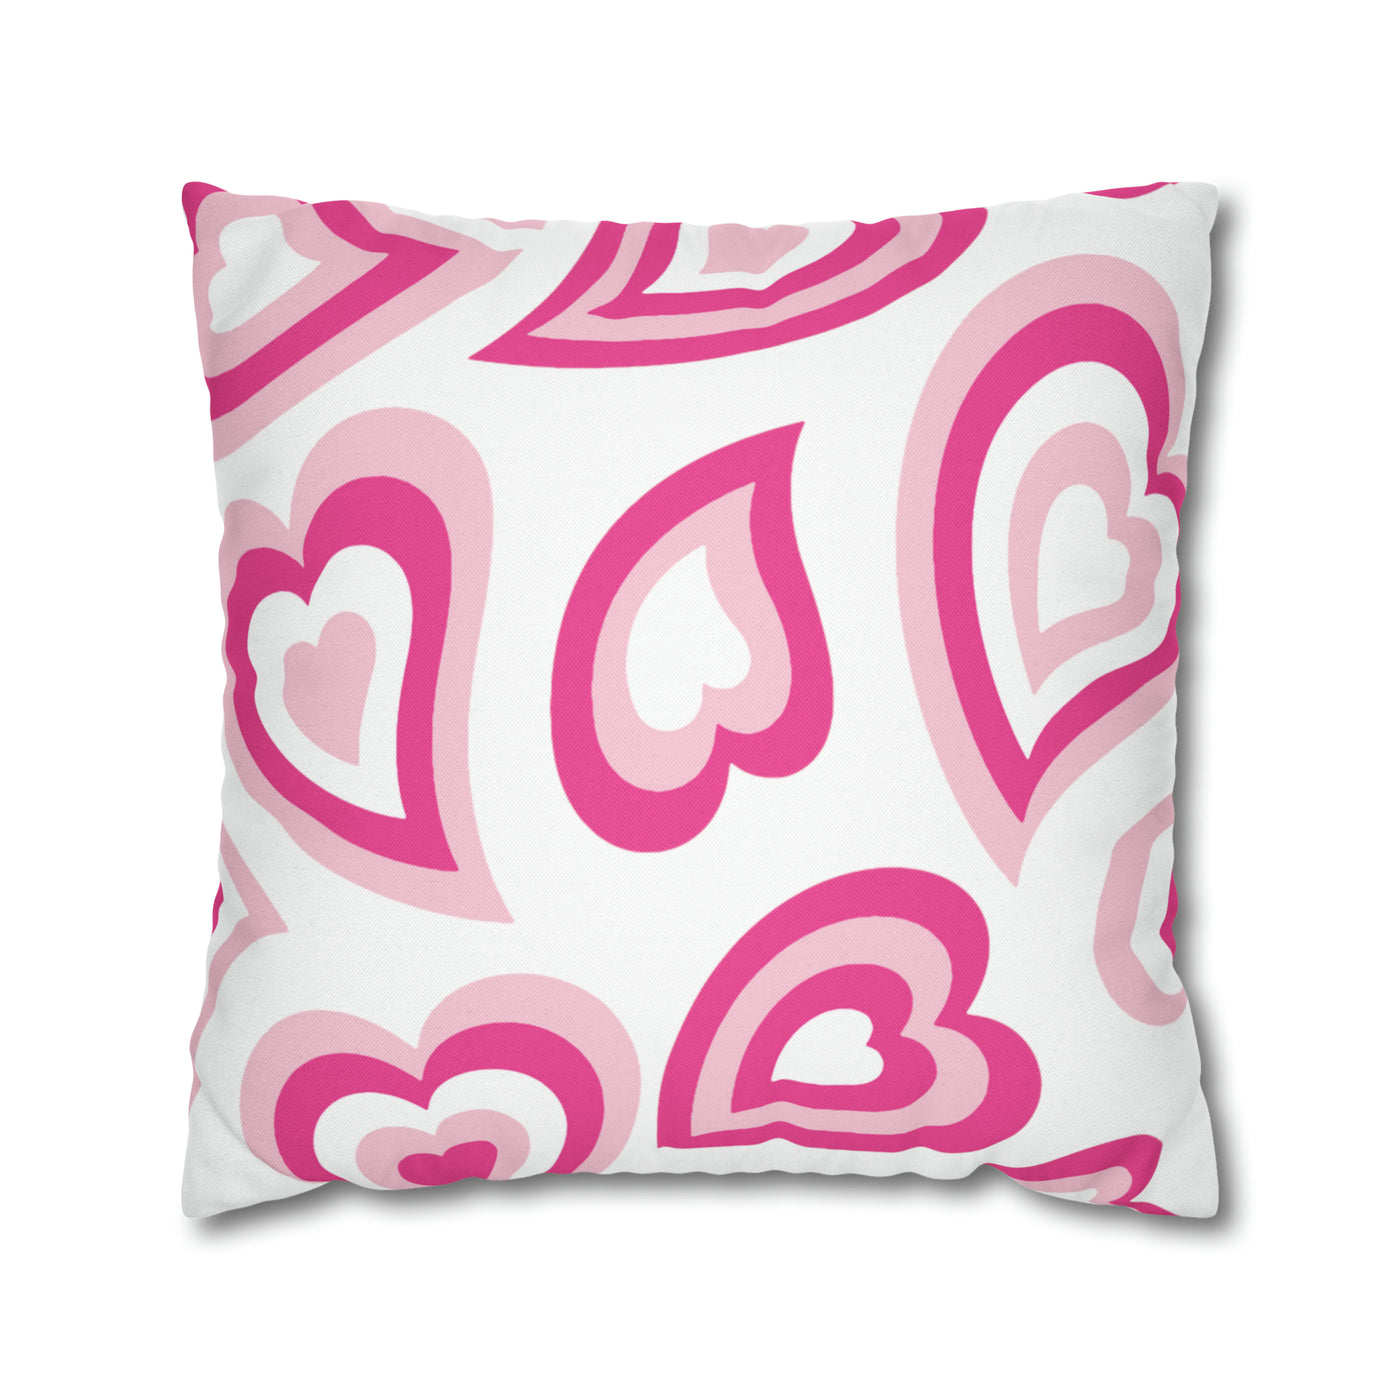 Barbie Retro Heart Pillow - Pink Heart Pillow, Heart Pillow, Pink Hearts, Valentine's Day, Barbie Pillow, Barbie Dreamhouse